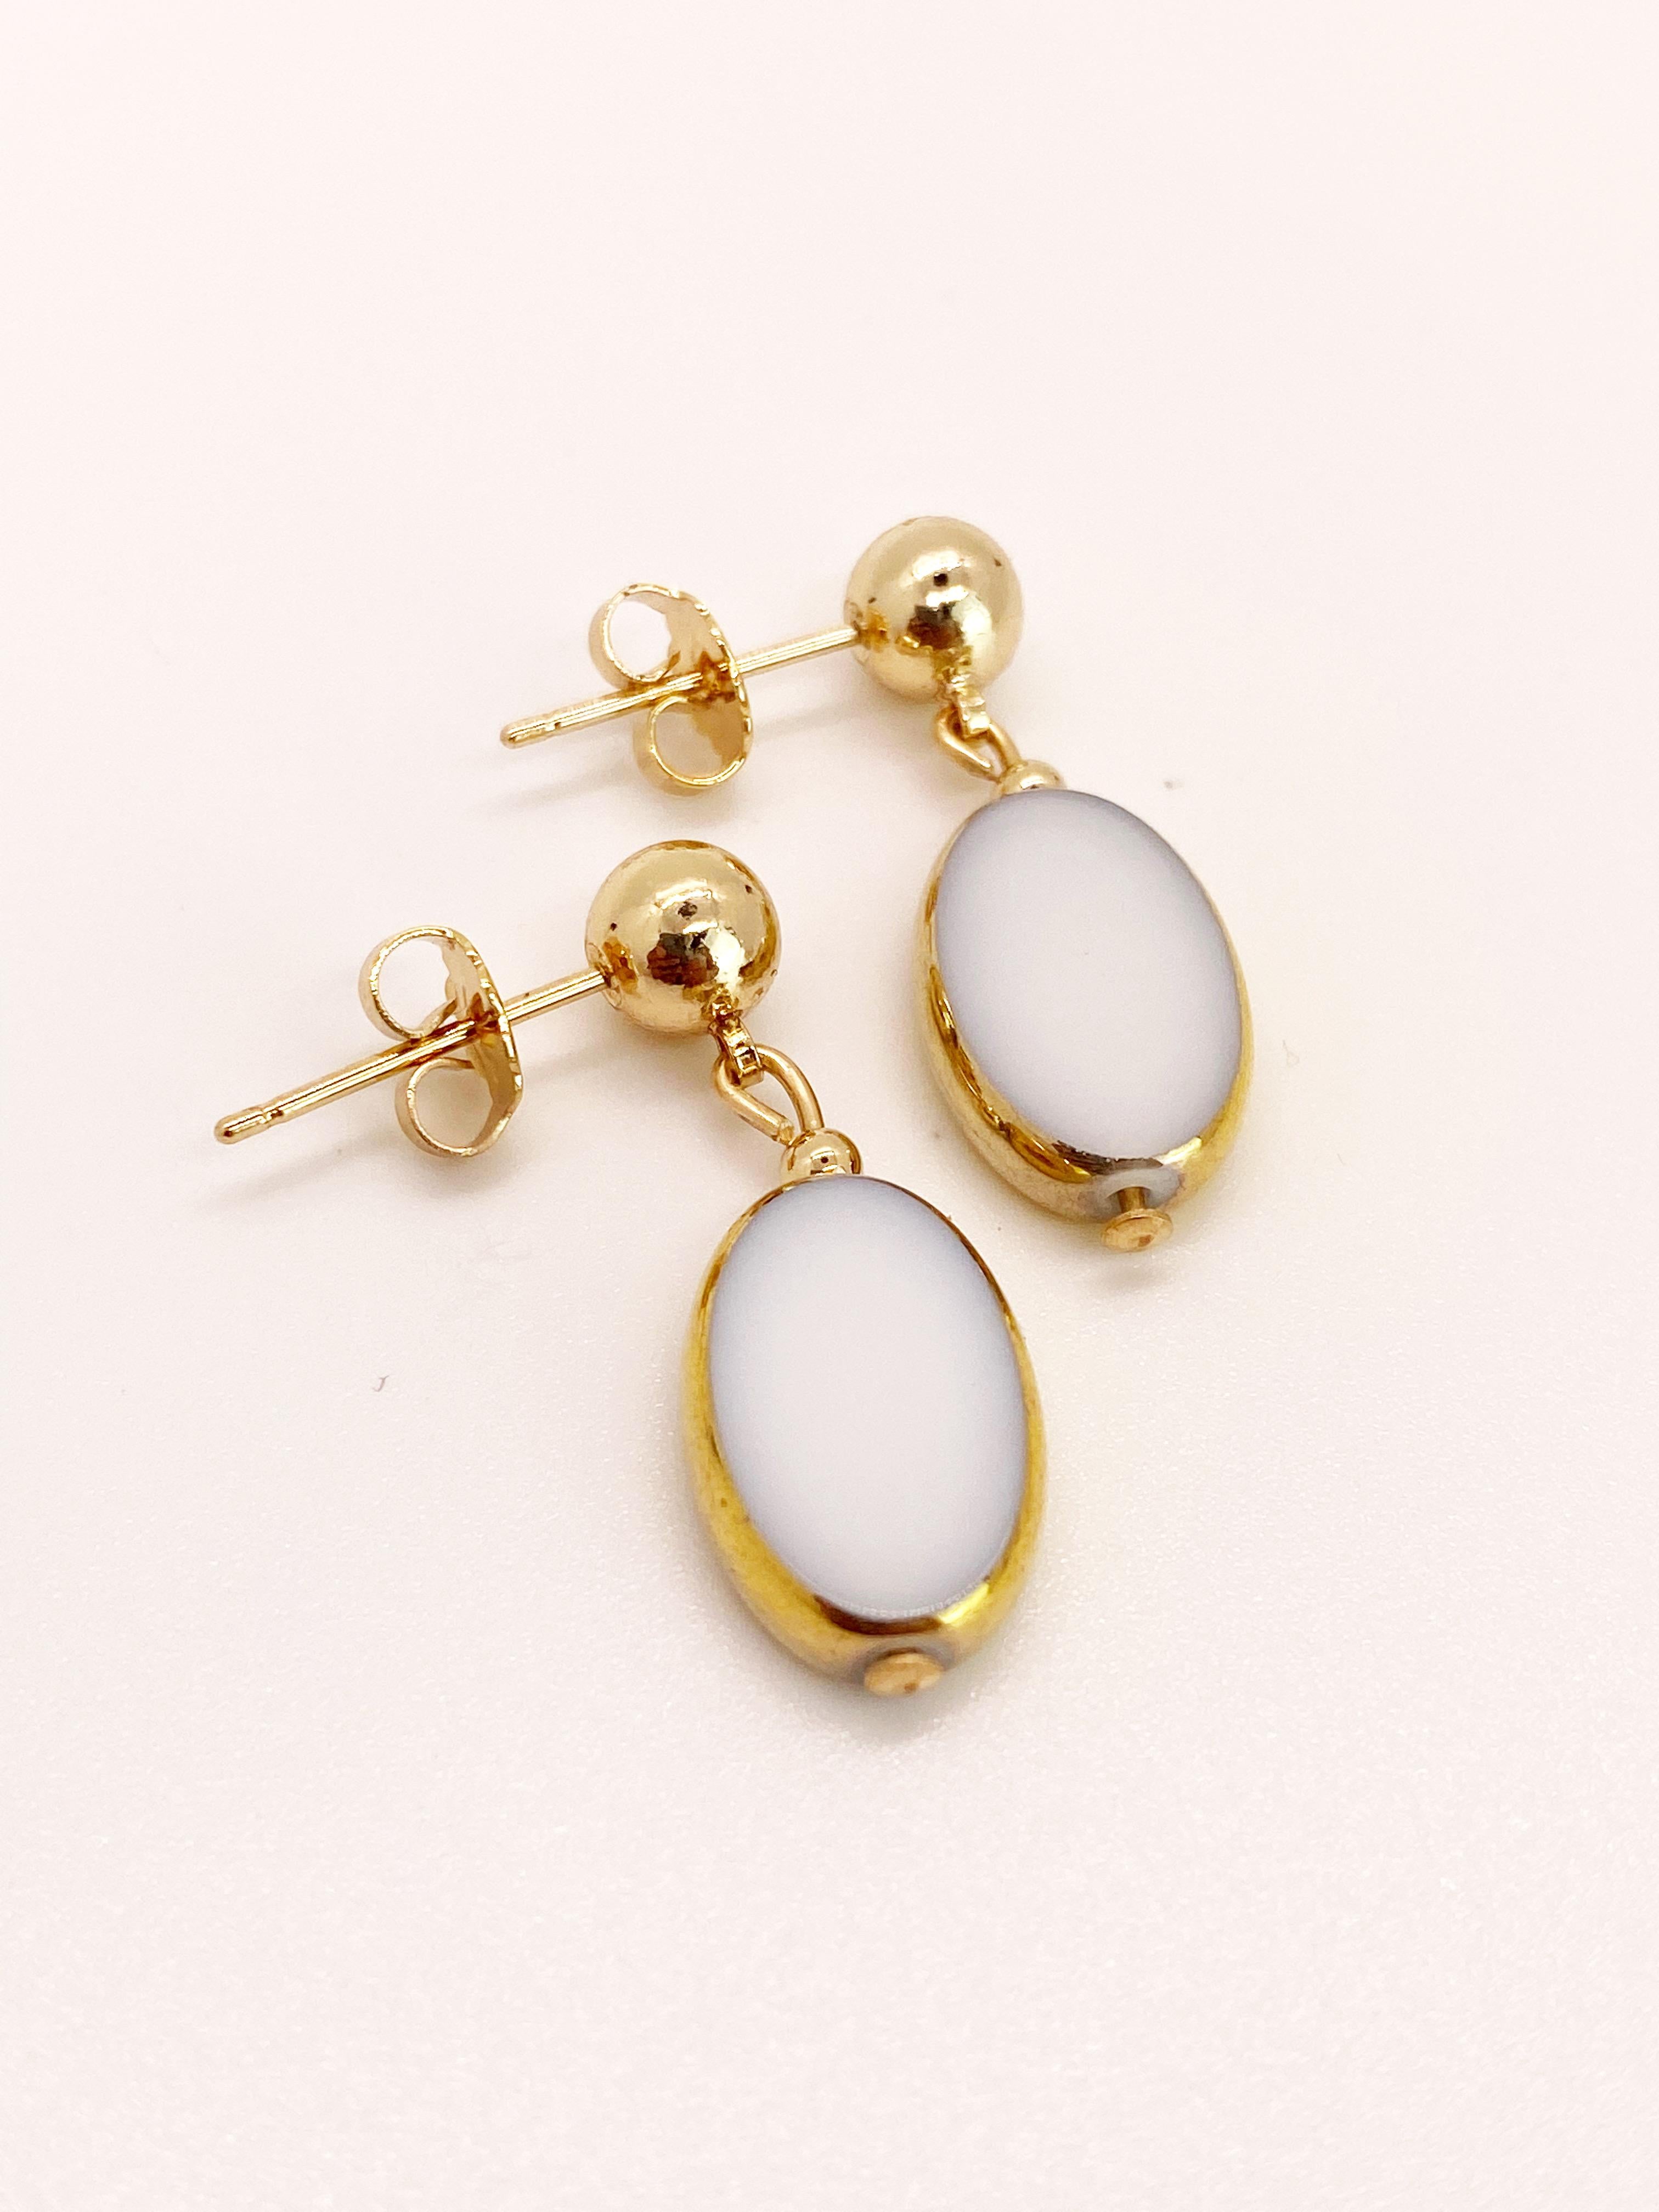 Des perles ovales en verre vintage allemand bordées d'or 24K pendent sur une boule de 6mm remplie d'or 14K. 

Les perles de verre vintage allemandes sont considérées comme rares et de collection, vers les années 1920-1960.

*Nos bijoux ont une